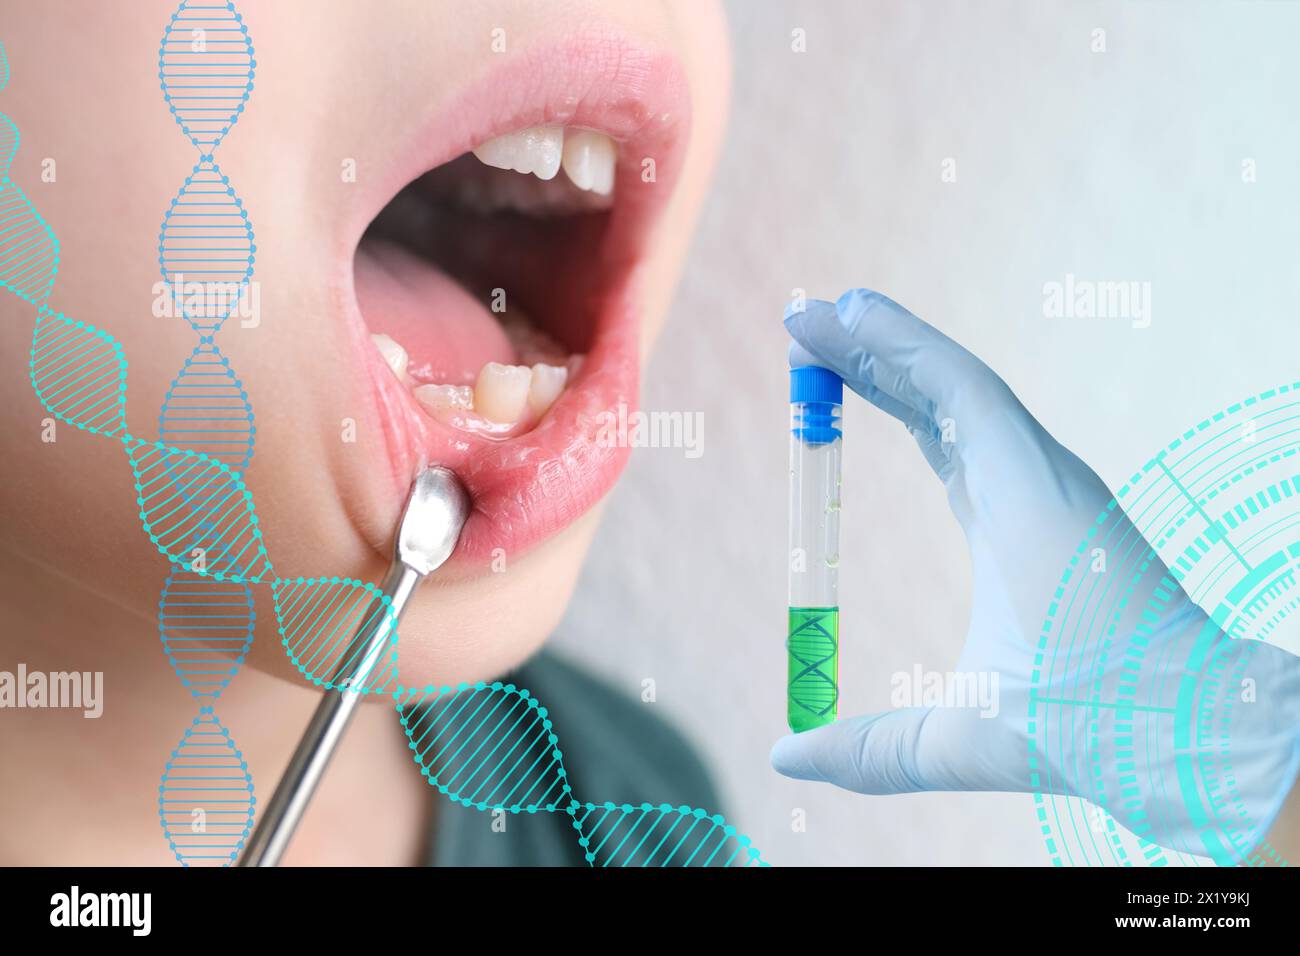 Kind, Kind 7-8 Jahre alt sitzt mit offenem Mund, Zahnuntersuchung durch einen Zahnarzt, Wissenschaftlerhand mit Reagenzglas, Konzept der wissenschaftlichen Forschung, Abschreckung Stockfoto